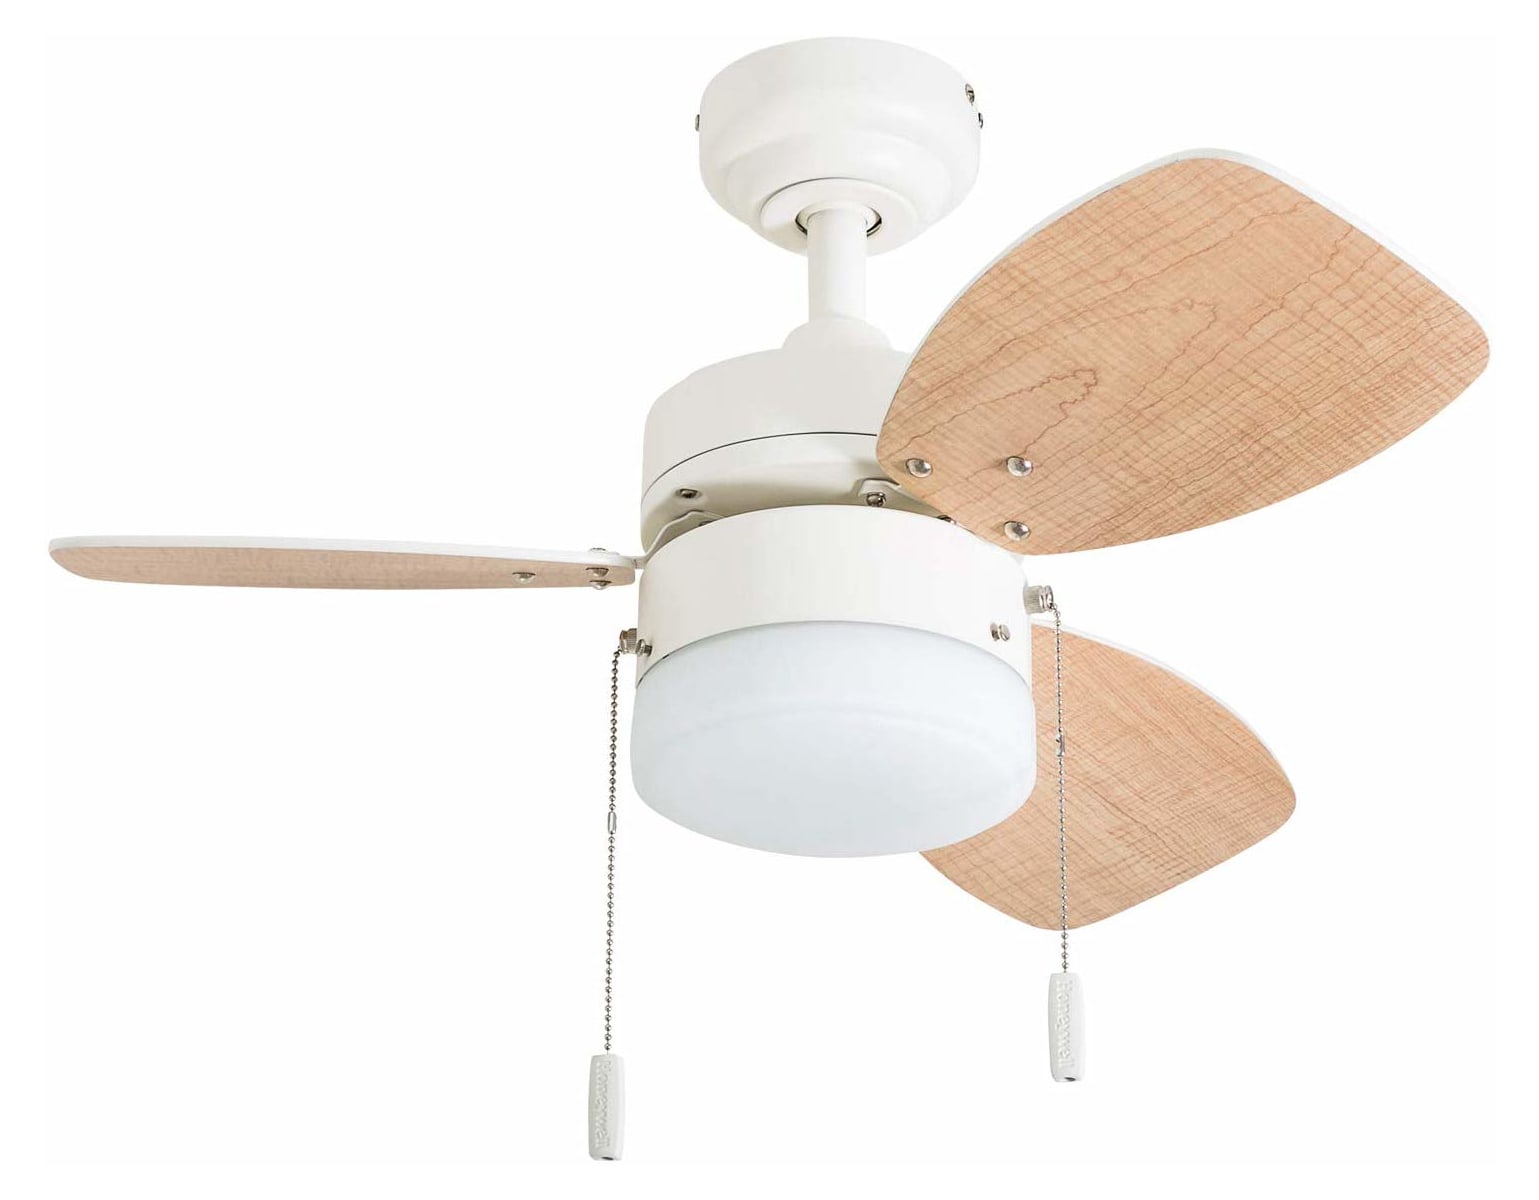 Honeywell Ocean Breeze Ceiling Fan, Brushed Nickel Finish, 30 Inch - 50601